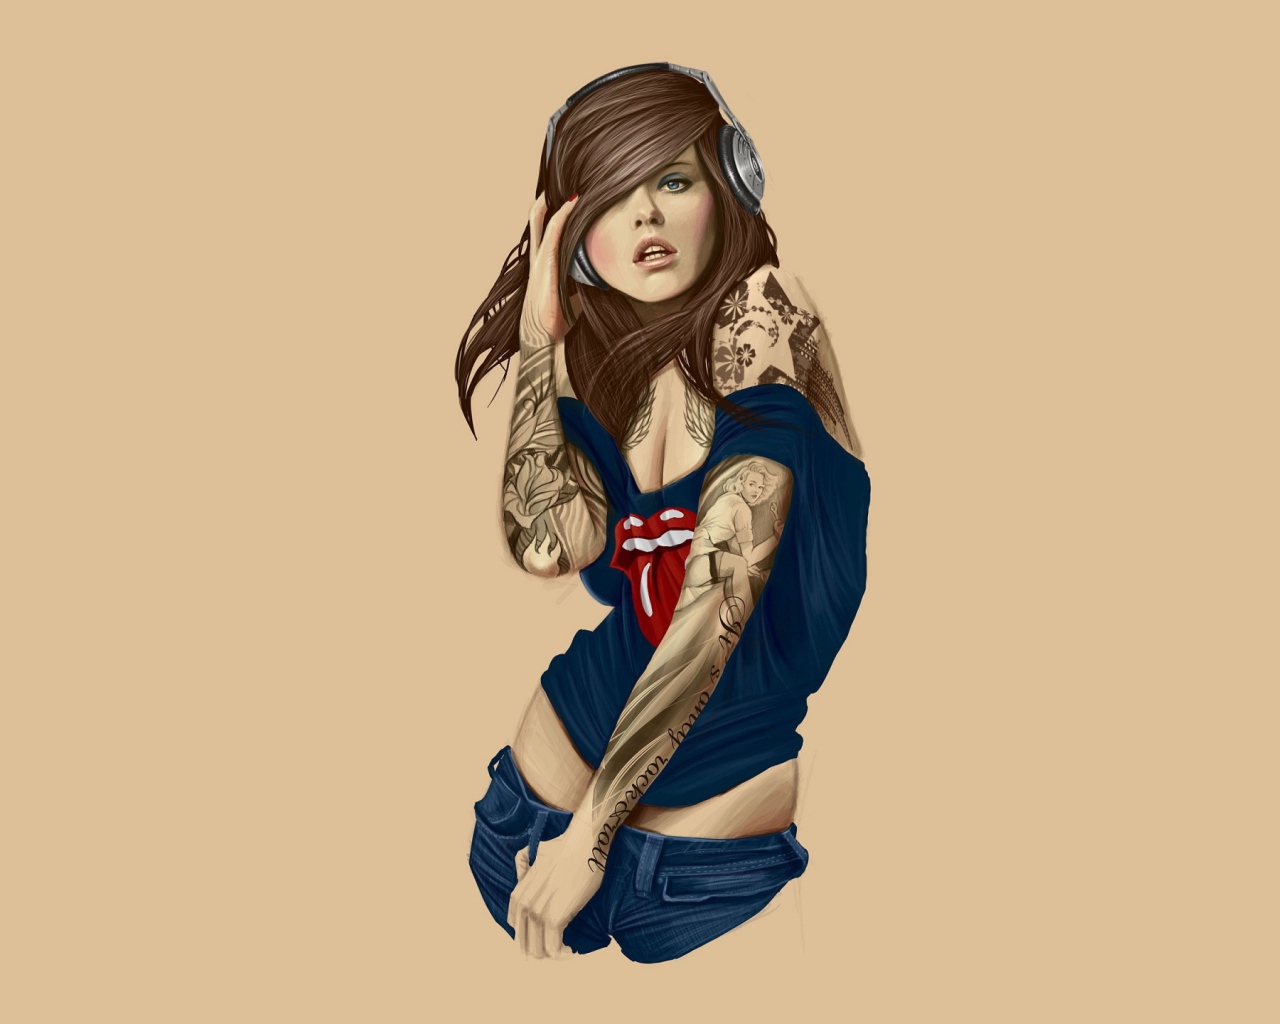 Современная девушка с татуировками на руках